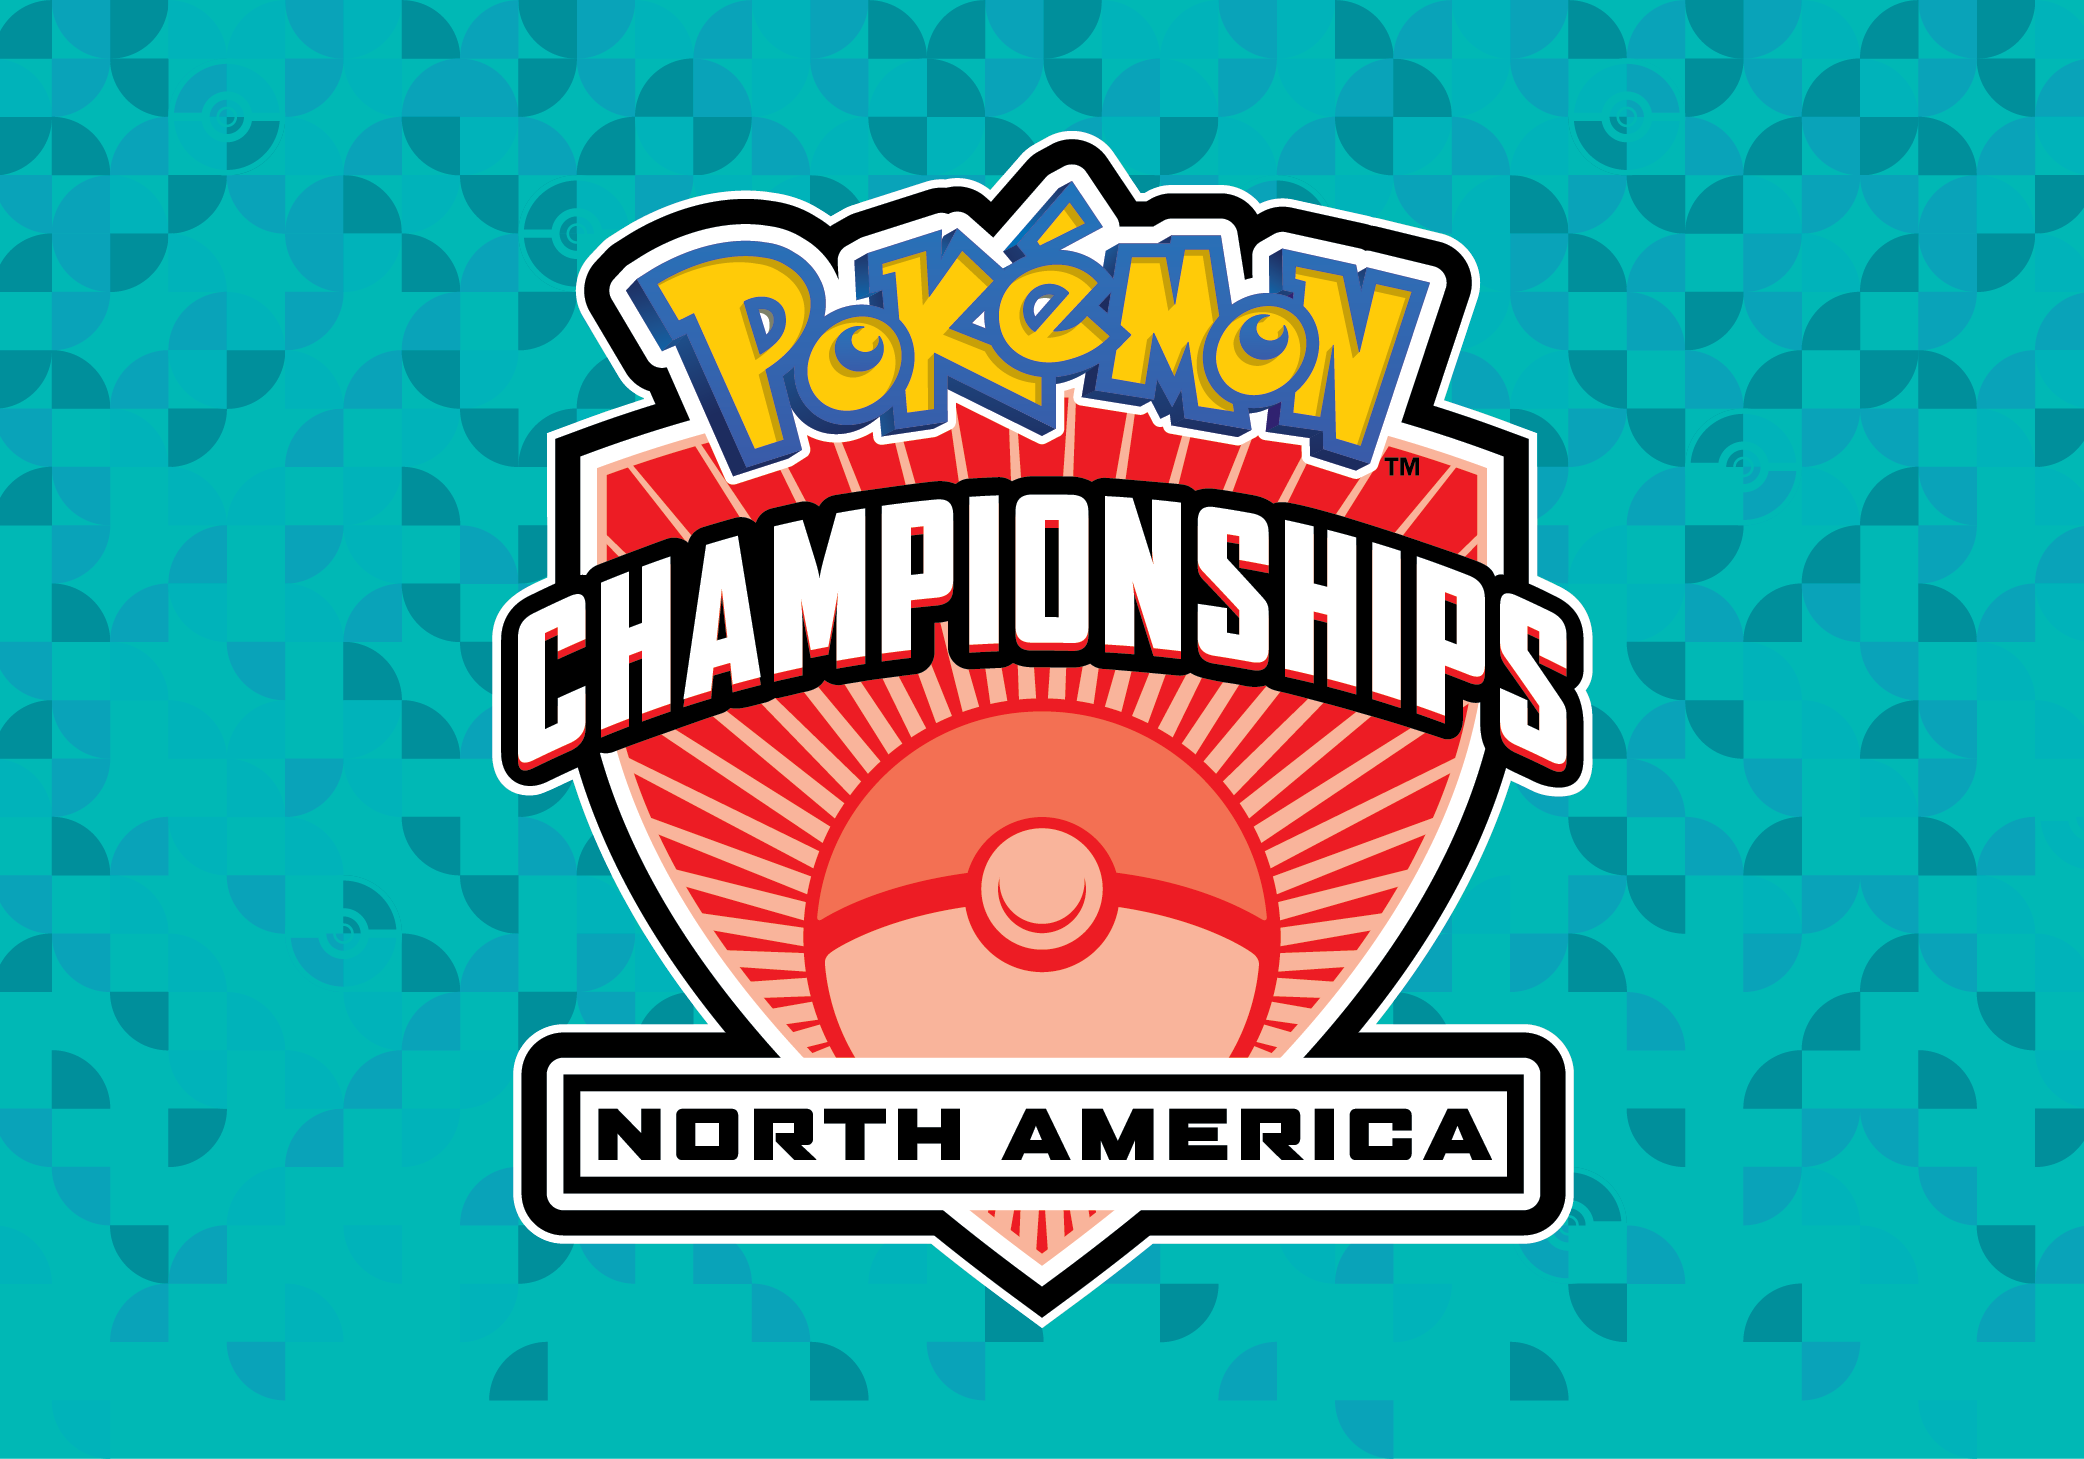 Pokémon North America International Championships Pokémon Center